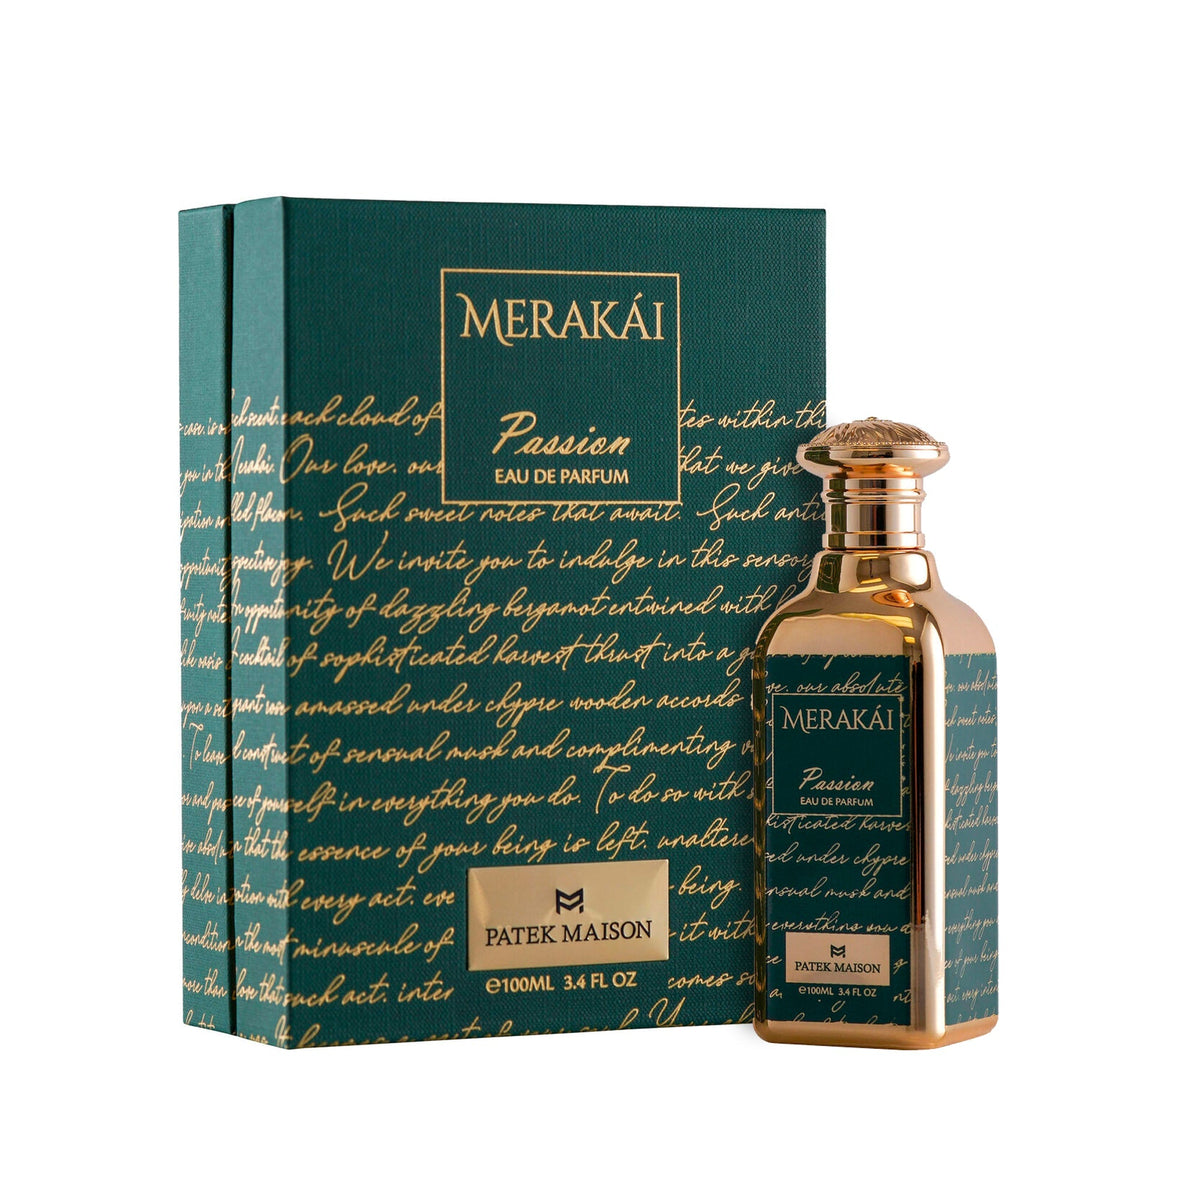 Merakai Passion Eau De Parfum Spray for Men and Women by Patek Maison